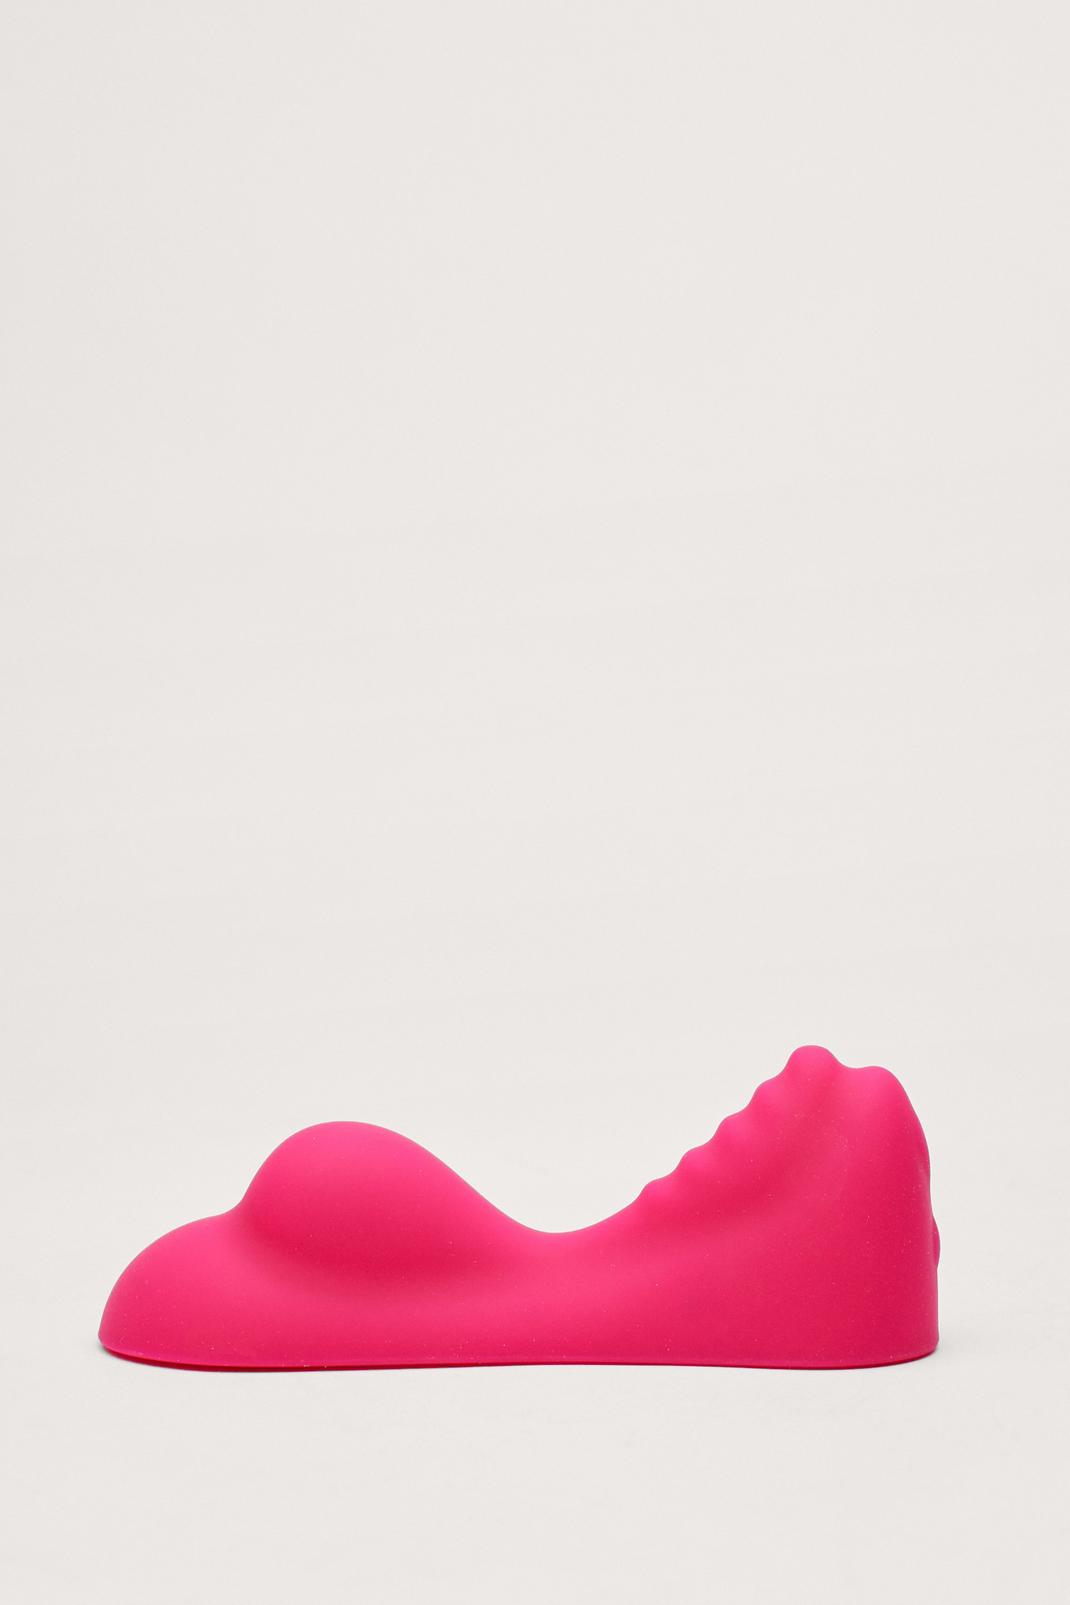 Pink Ridged Seat Vibrator Sex Toy image number 1